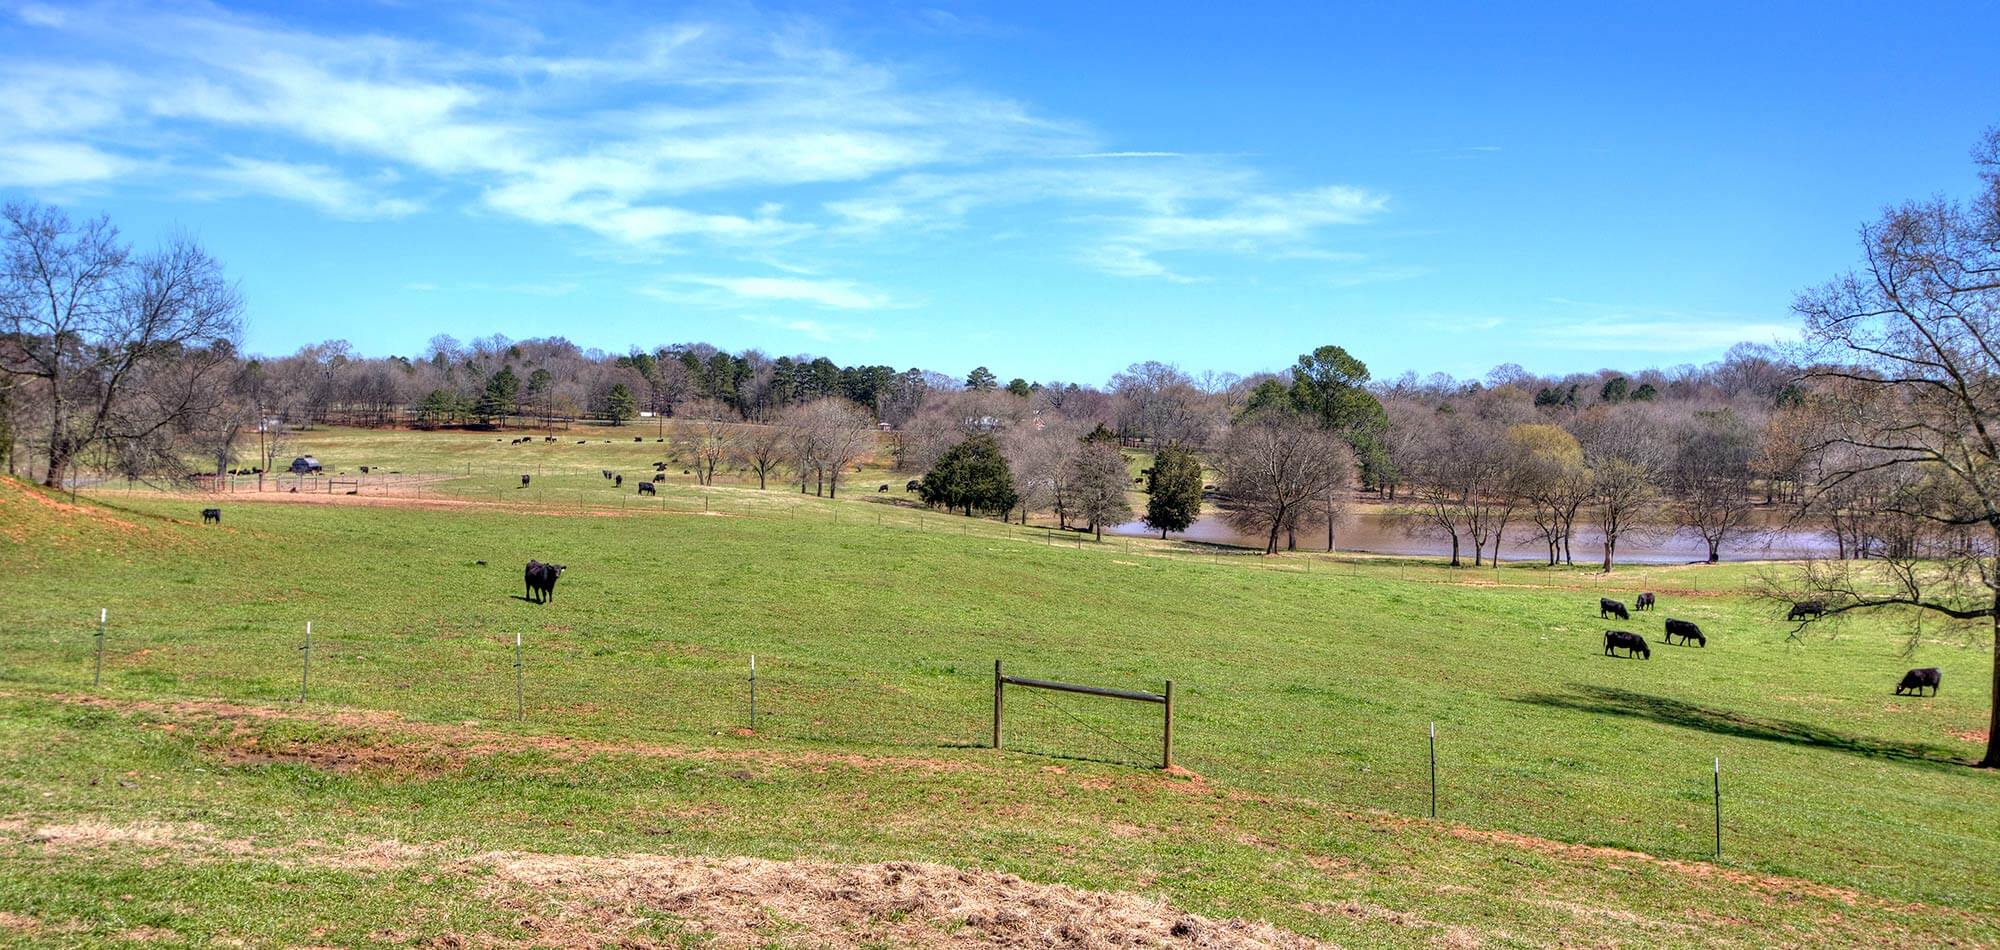 Katie Colin Farm Cows in Field